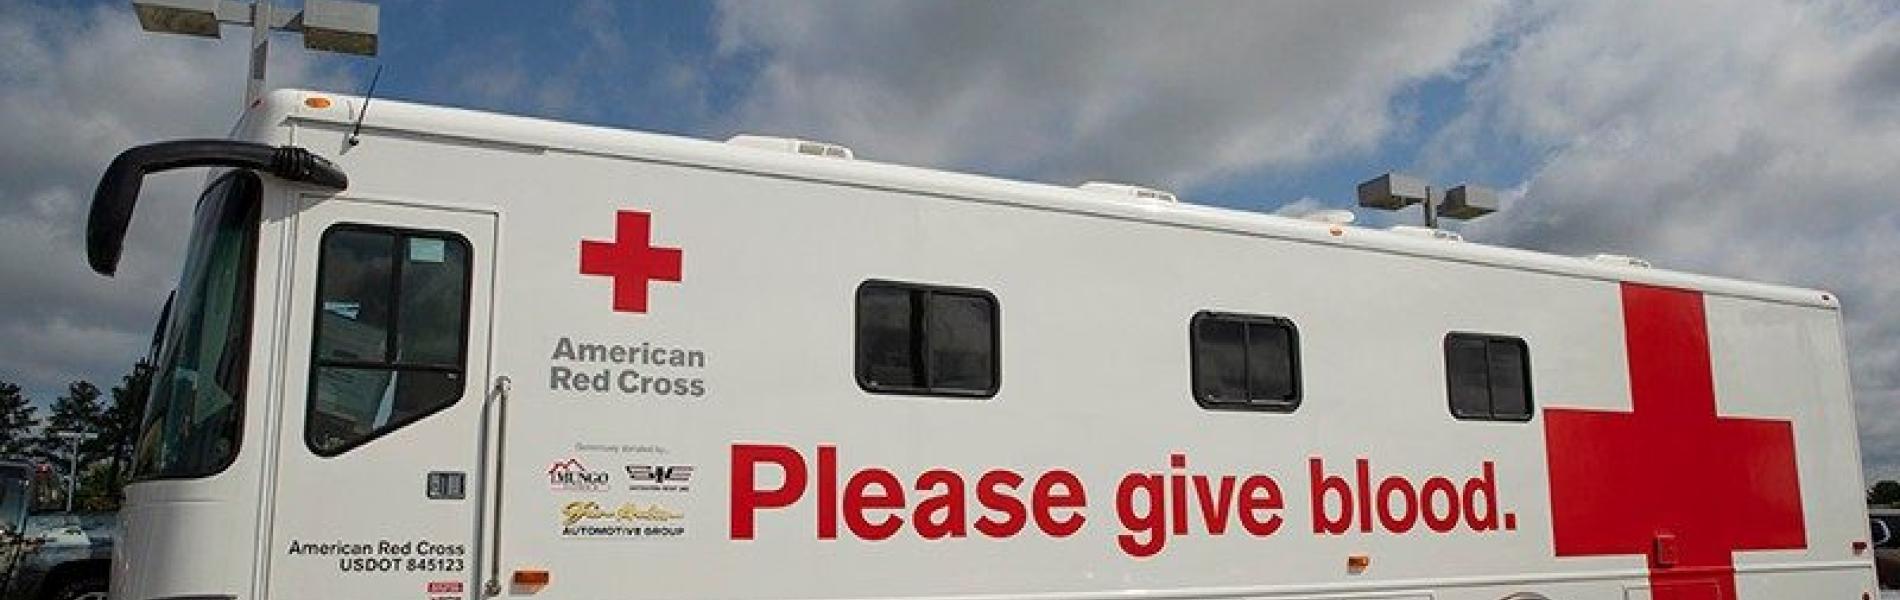 Red Cross Blood Donation Van